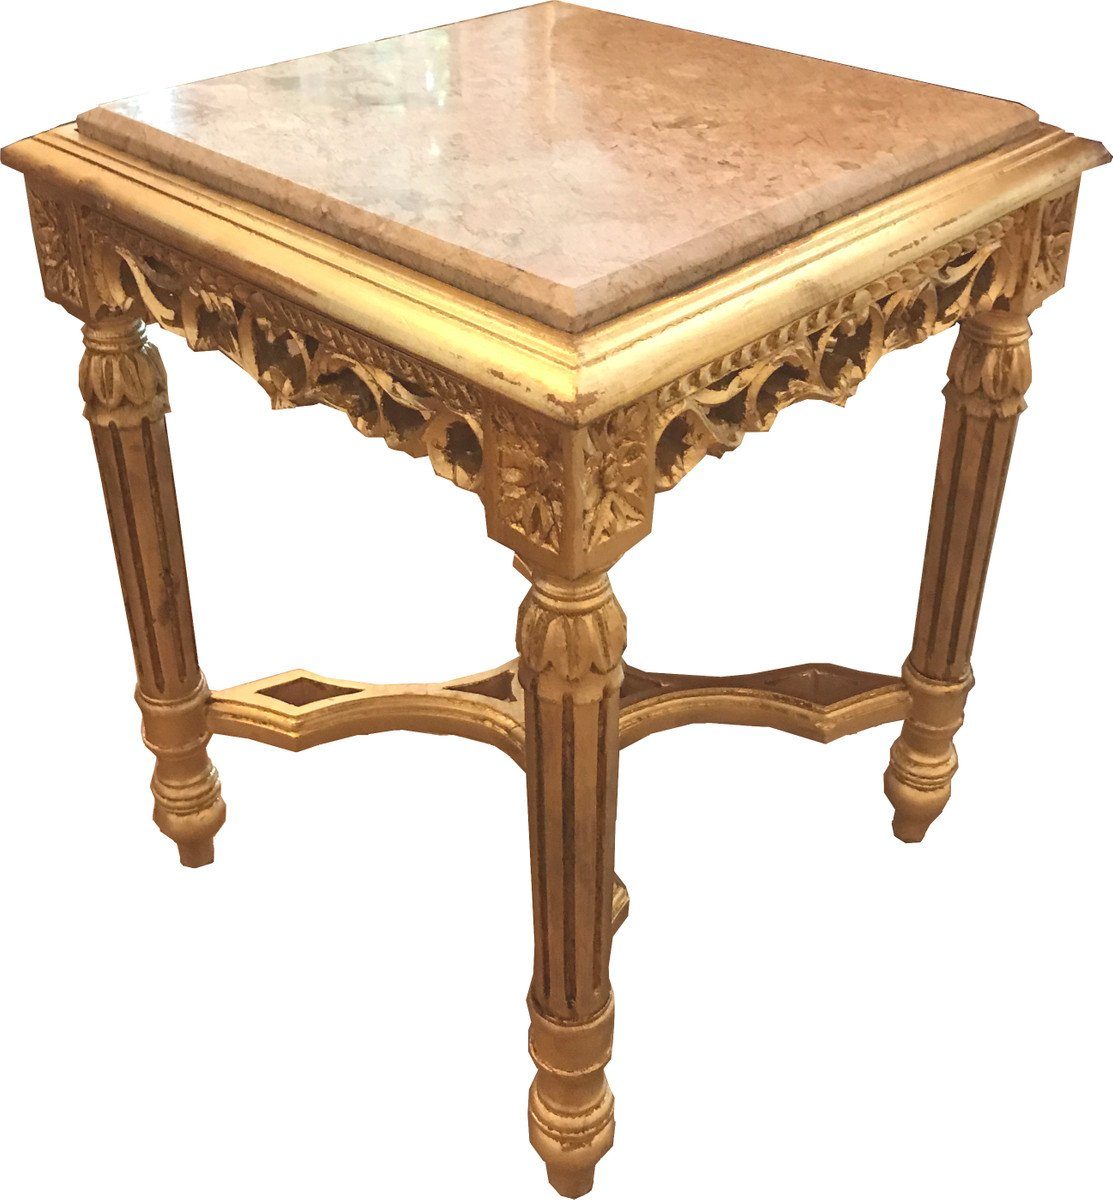 Casa Padrino Beistelltisch Barock Beistelltisch Eckig Gold mit Creme Marmorplatte 41 x 41 x H 53 cm Antik Stil - Telefon Blumen Tisch